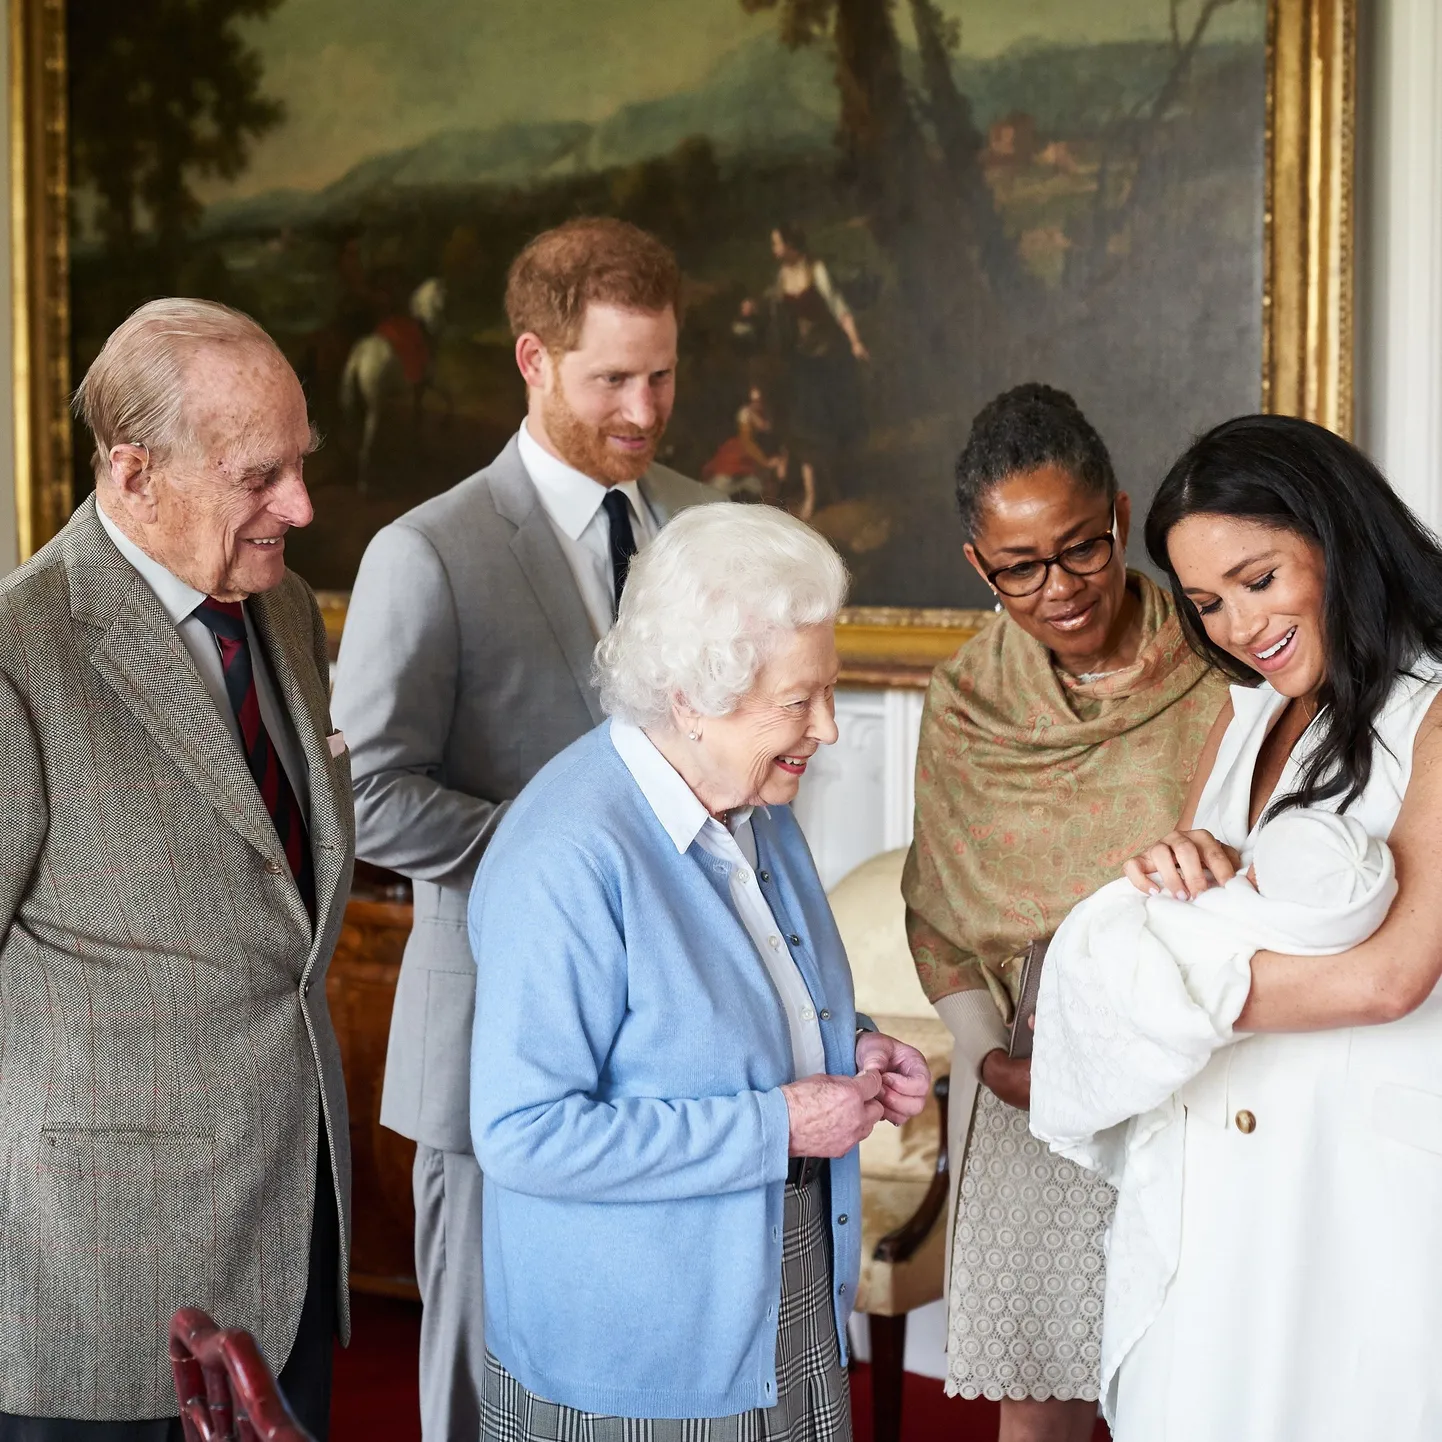 Prints Philip, prints Harry, kuninganna Elizabeth II, Meghani ema Doria Ragland ning Meghan Markle vastsündinud poja Archiega.